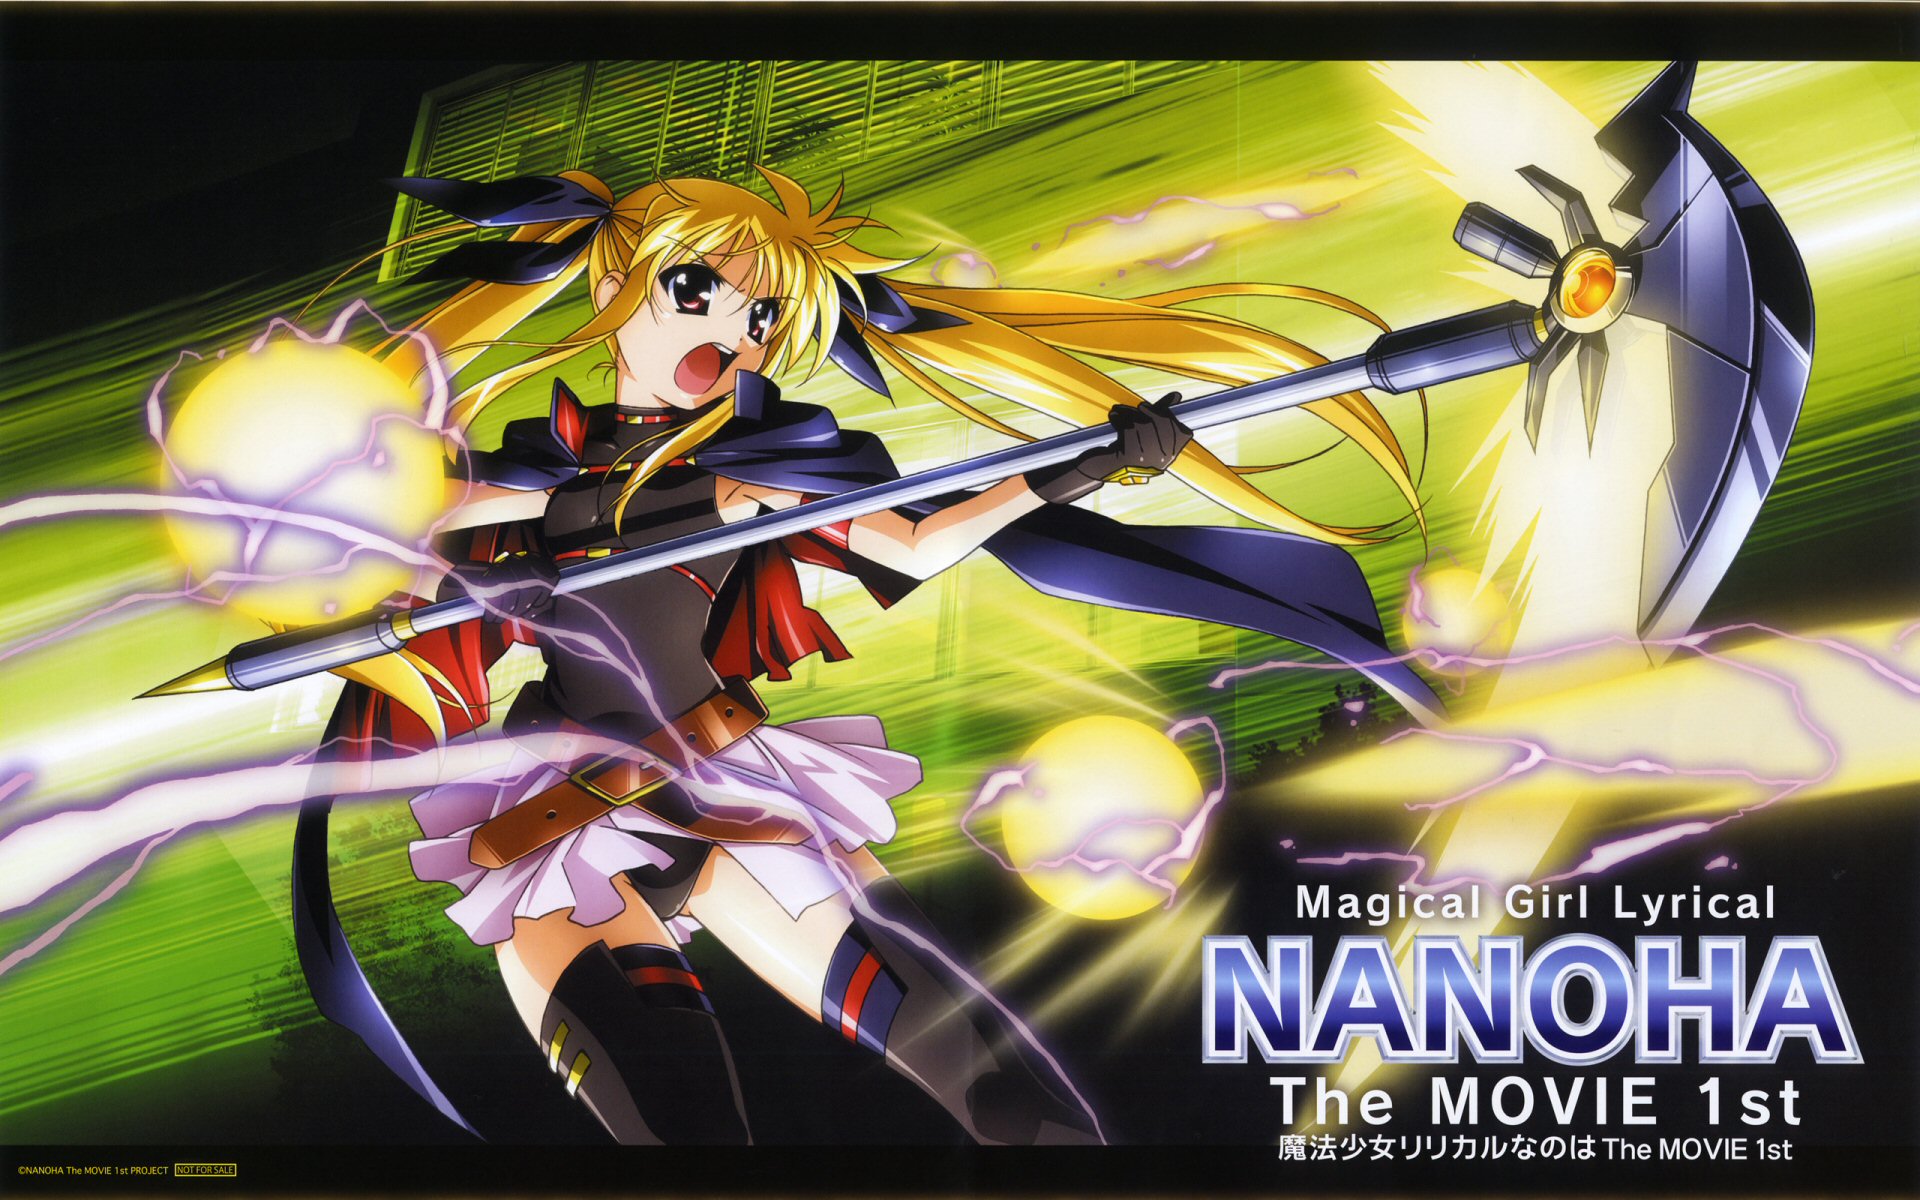 Magical Girl Lyrical Nanoha Strikers Wallpaper Image